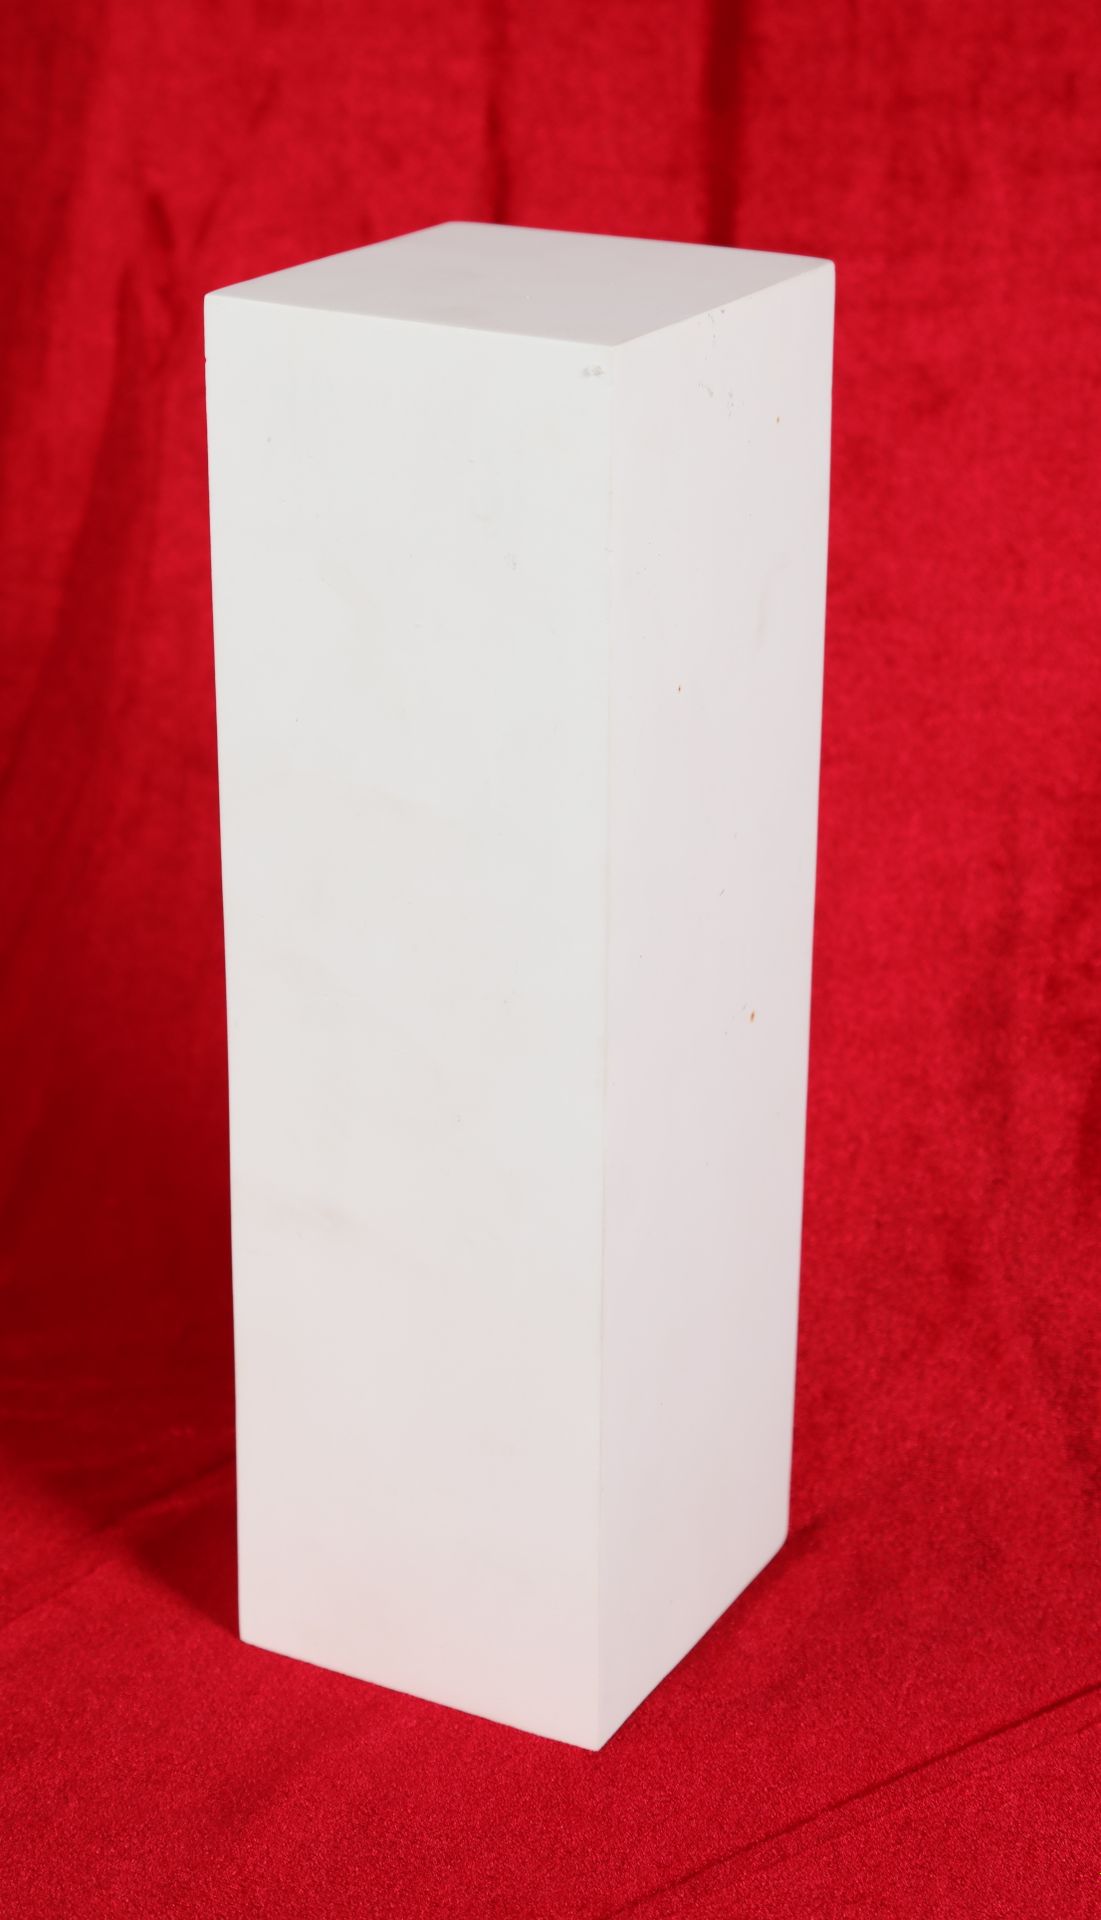 Null 12 , "White sconces" in plaster, new, rectangular shape, 28X9,5X8,5